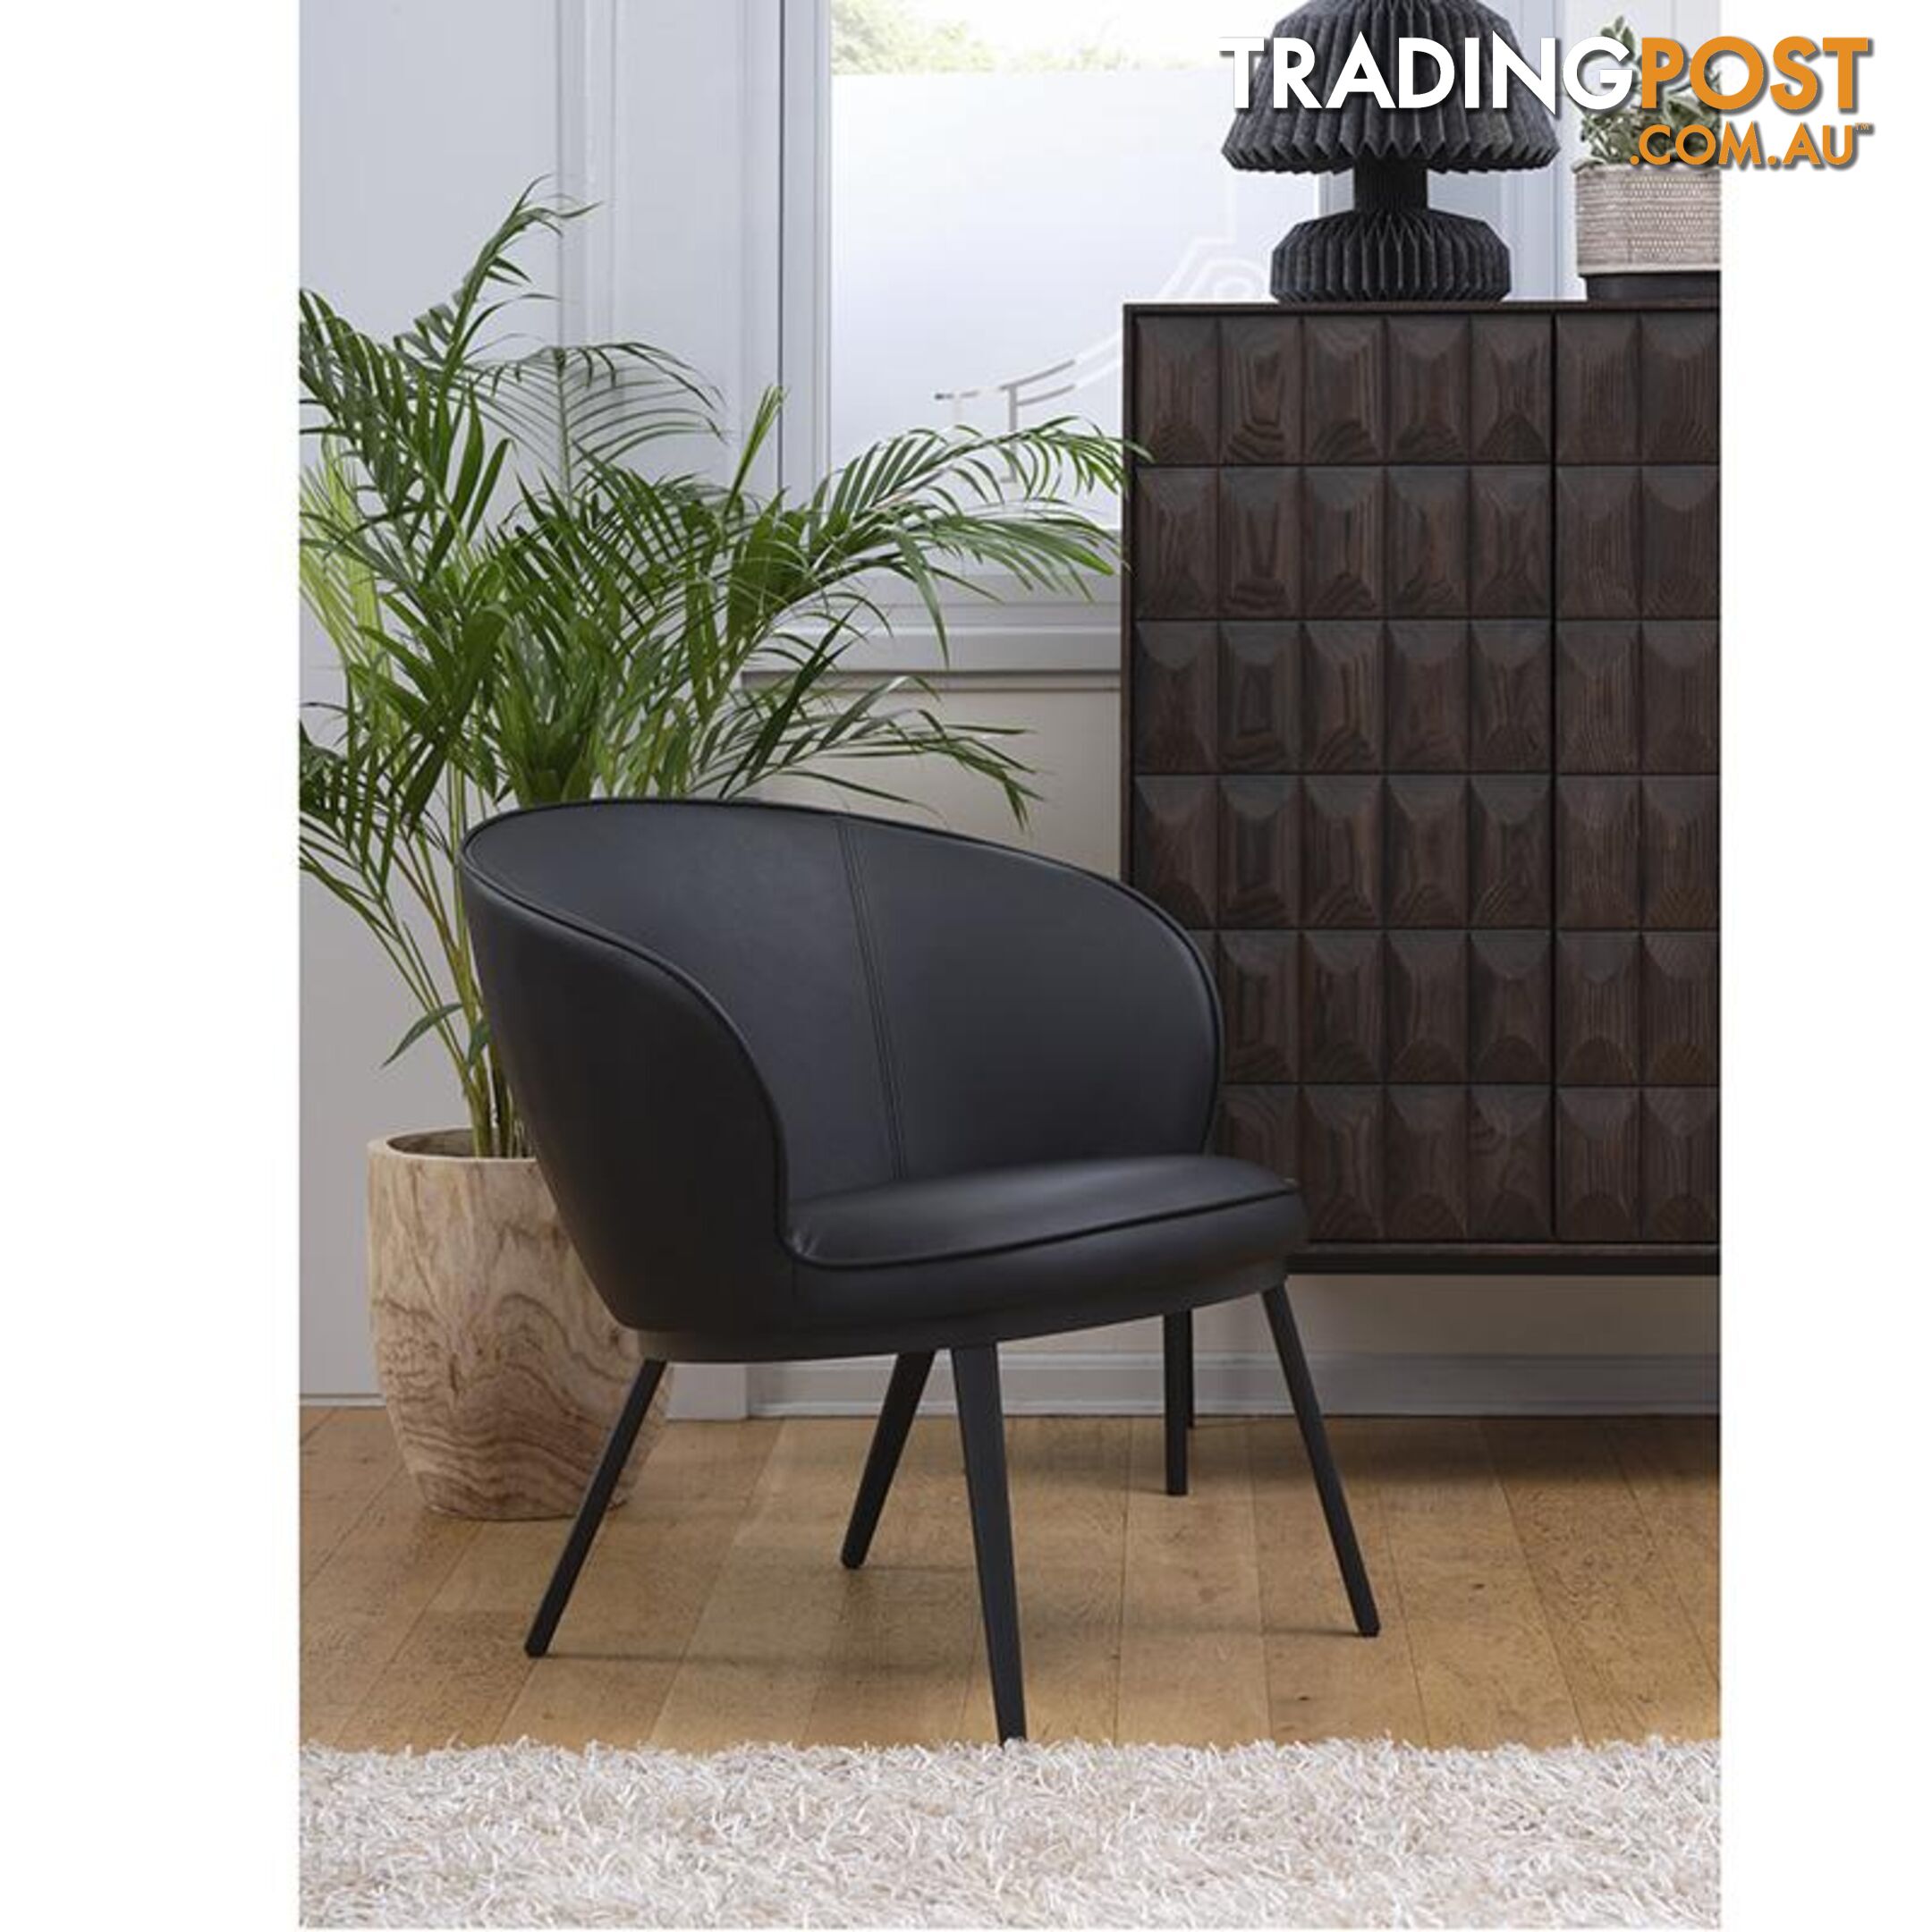 GAIN Lounge Chair - Black - 41180000 - 5704745090818